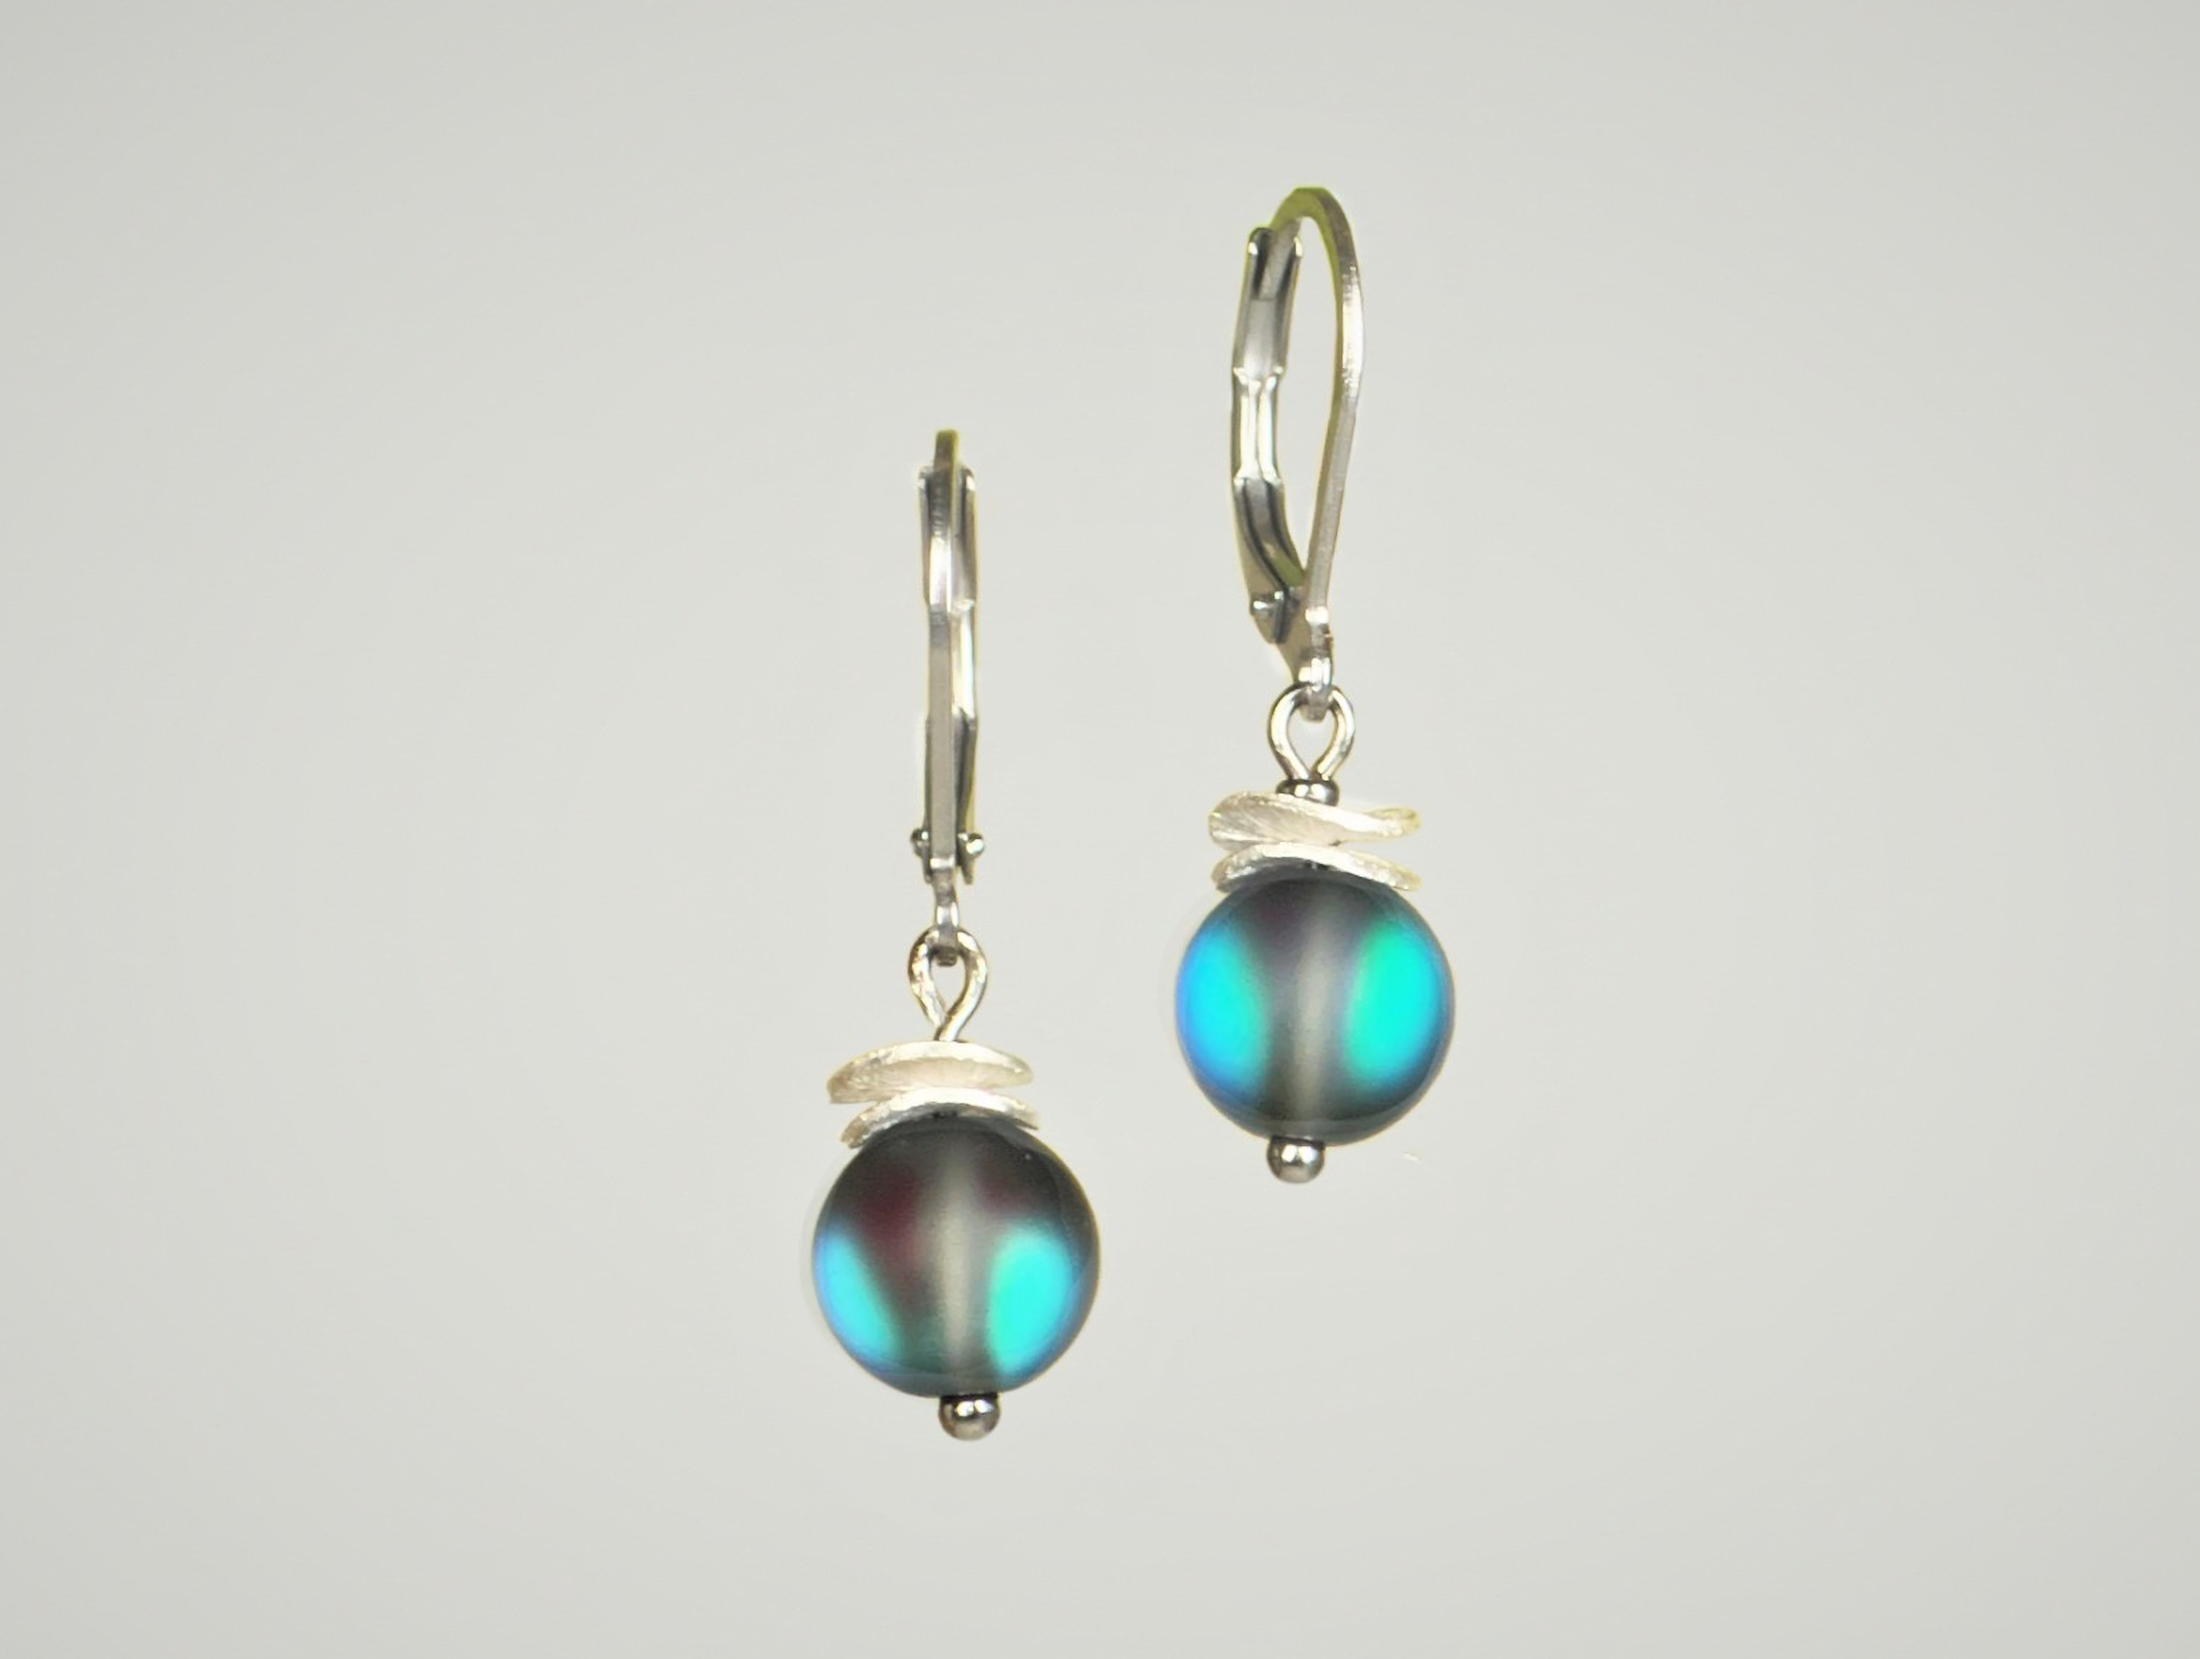 Ohrhänger mit schimmernder Perle und Zierteilen aus 925 Silber